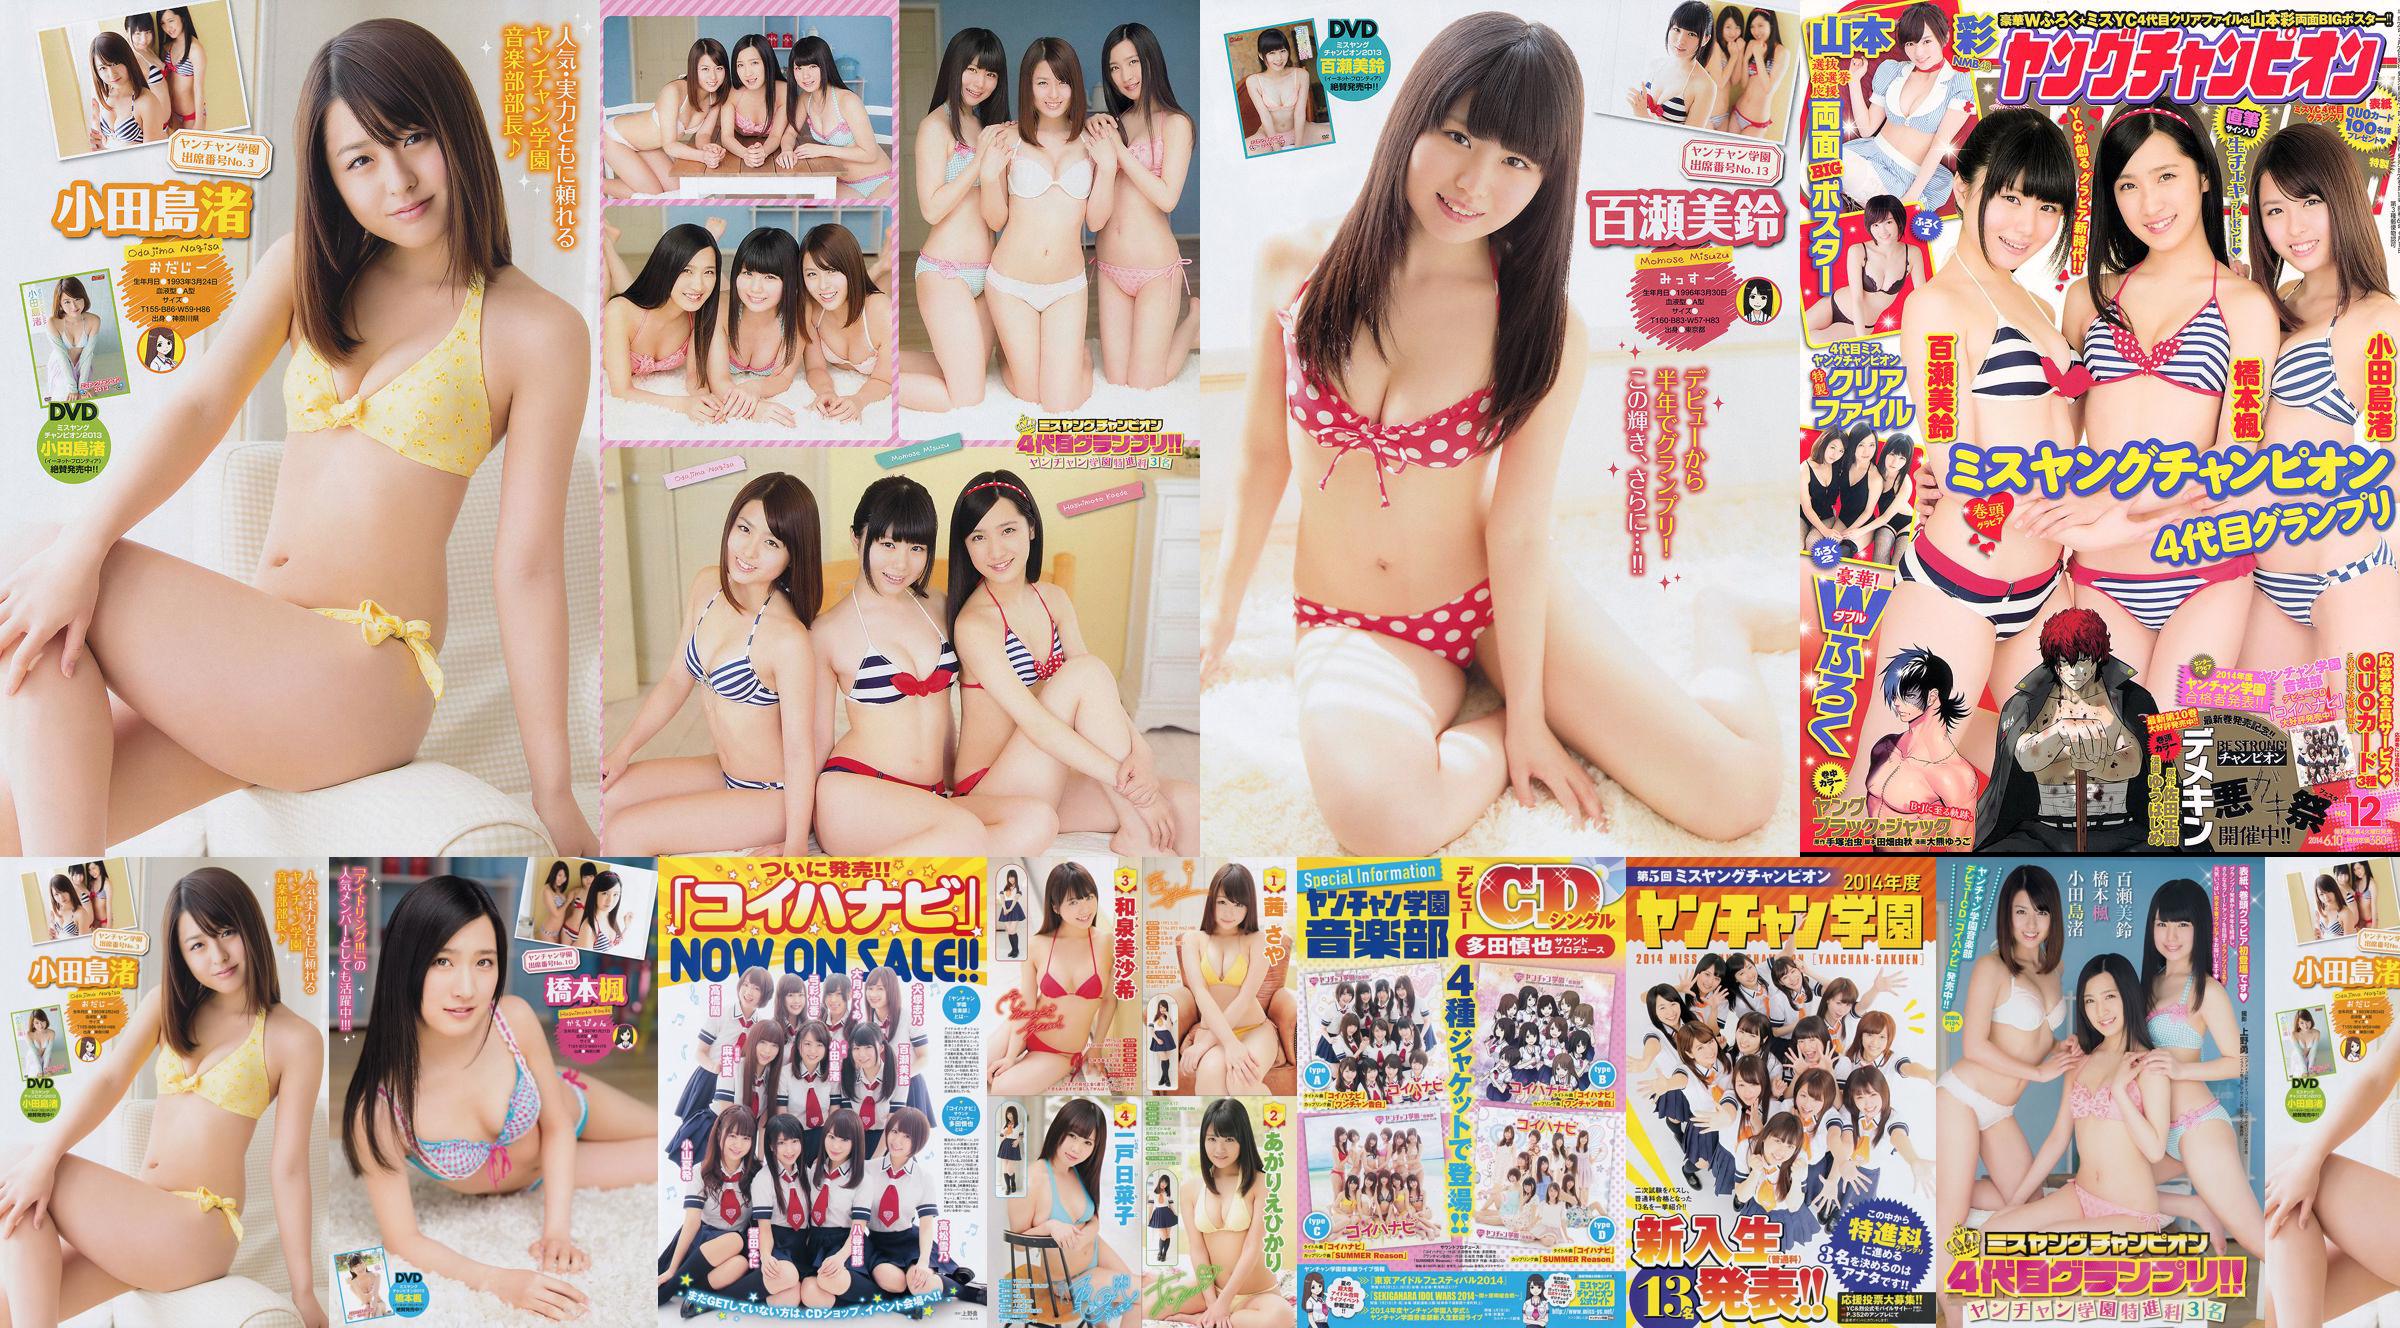 [Junger Champion] Nagisa Odajima Kaede Hashimoto Misuzu Momose 2014 Nr. 12 Foto No.125dd1 Seite 2